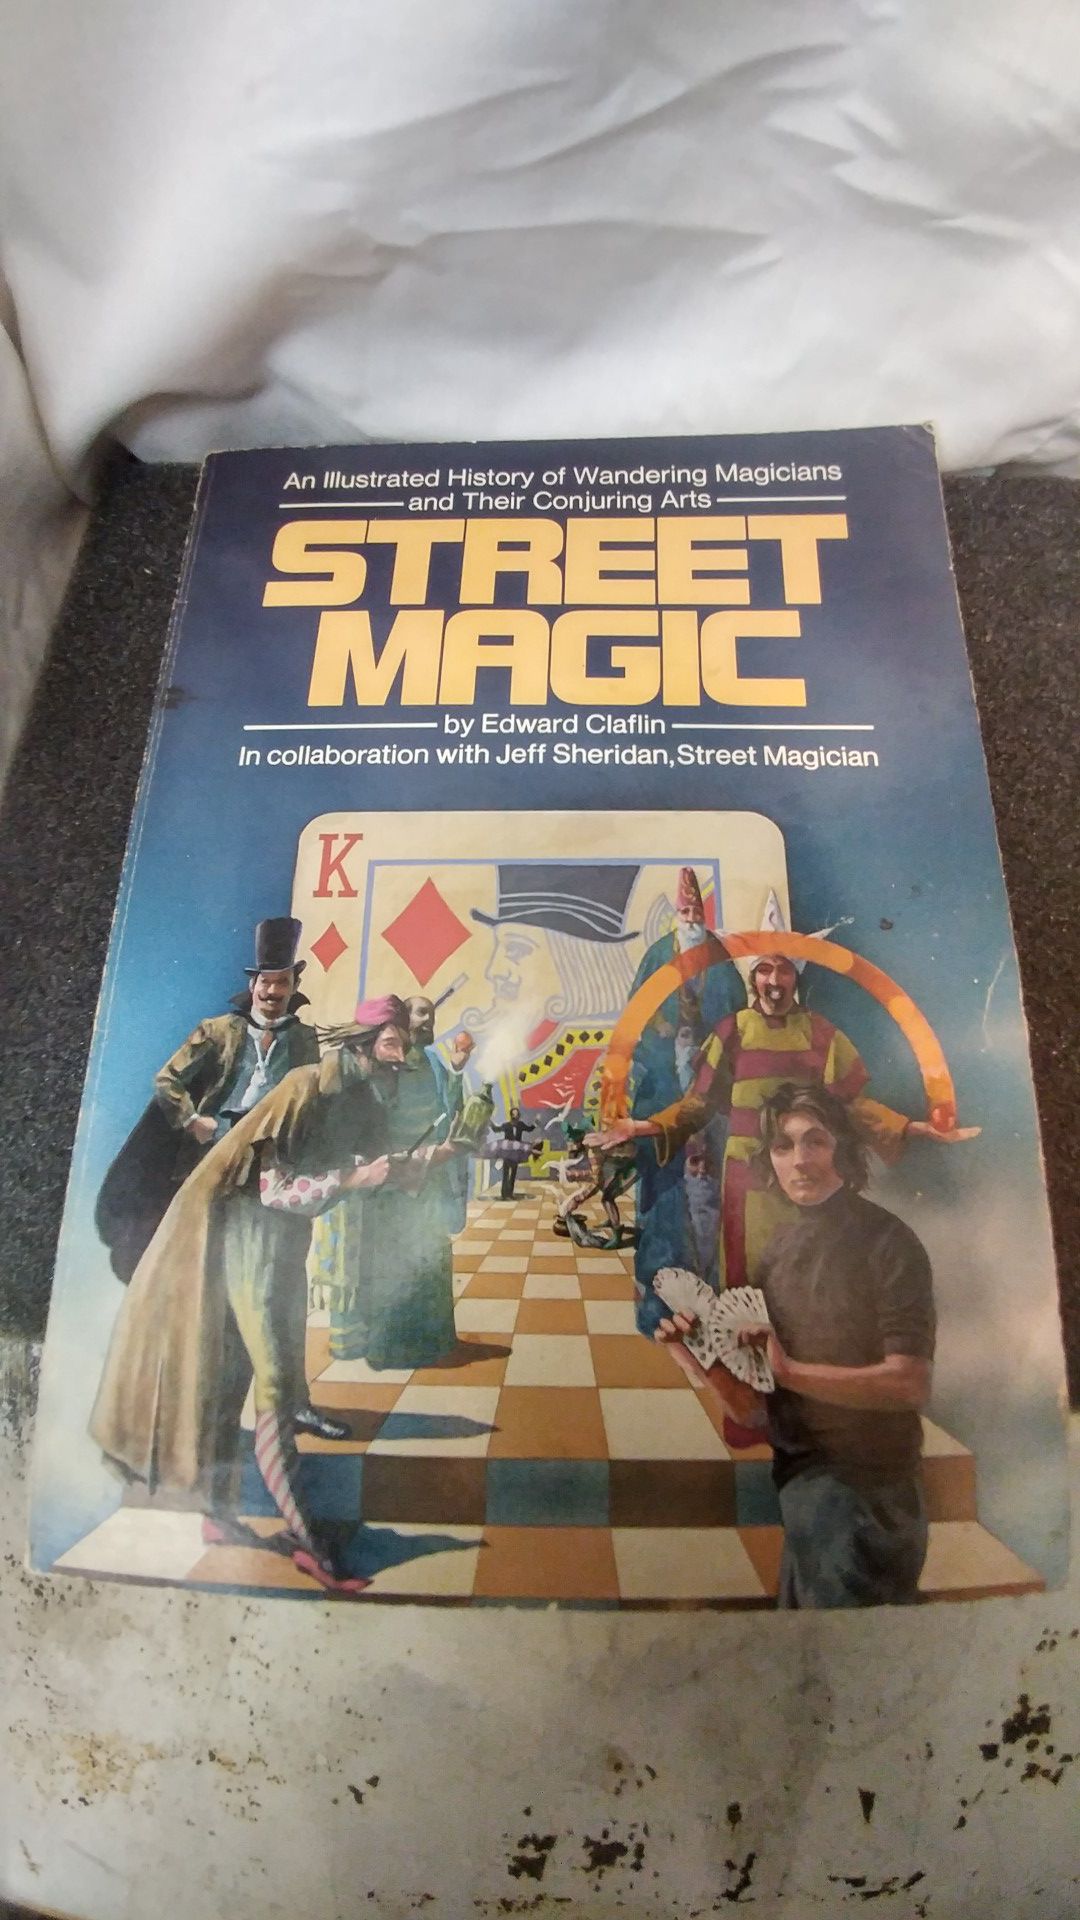 Street Magic by Edward Claflin